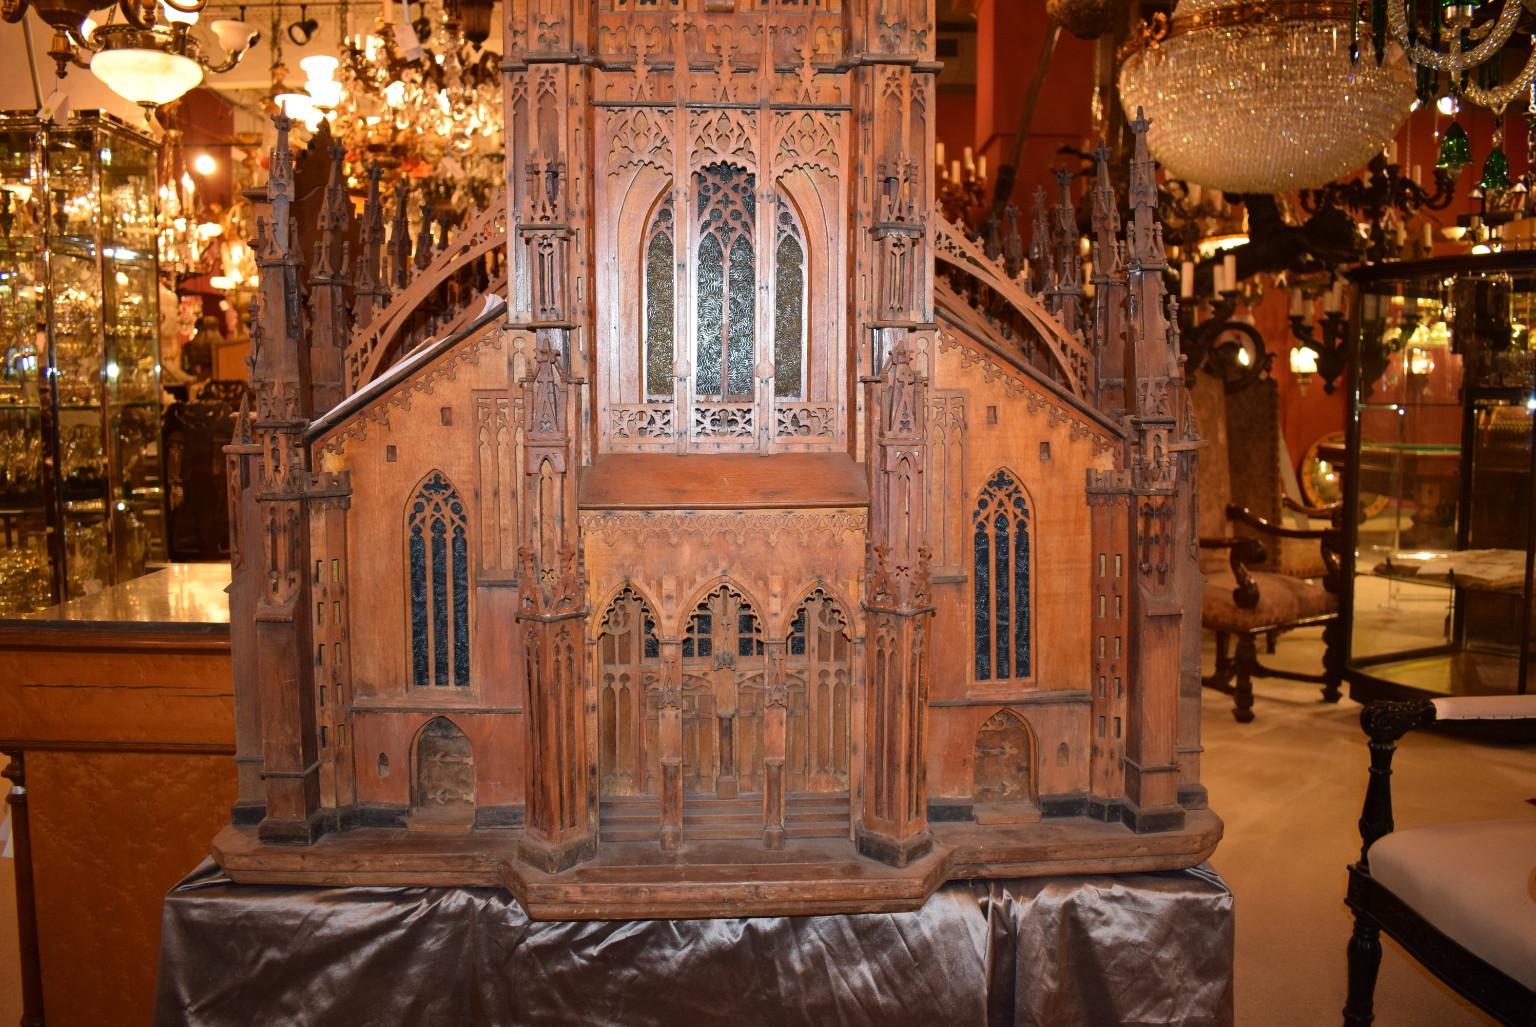 Superbe et rare maquette de la cathédrale d'Ulm, achevée en 1925 par Michael Molz de Los Angeles. Elle est en très bon état et comporte des vitraux. 
La cathédrale d'Ulm est située à Ulm, en Allemagne, et est actuellement la plus haute église du